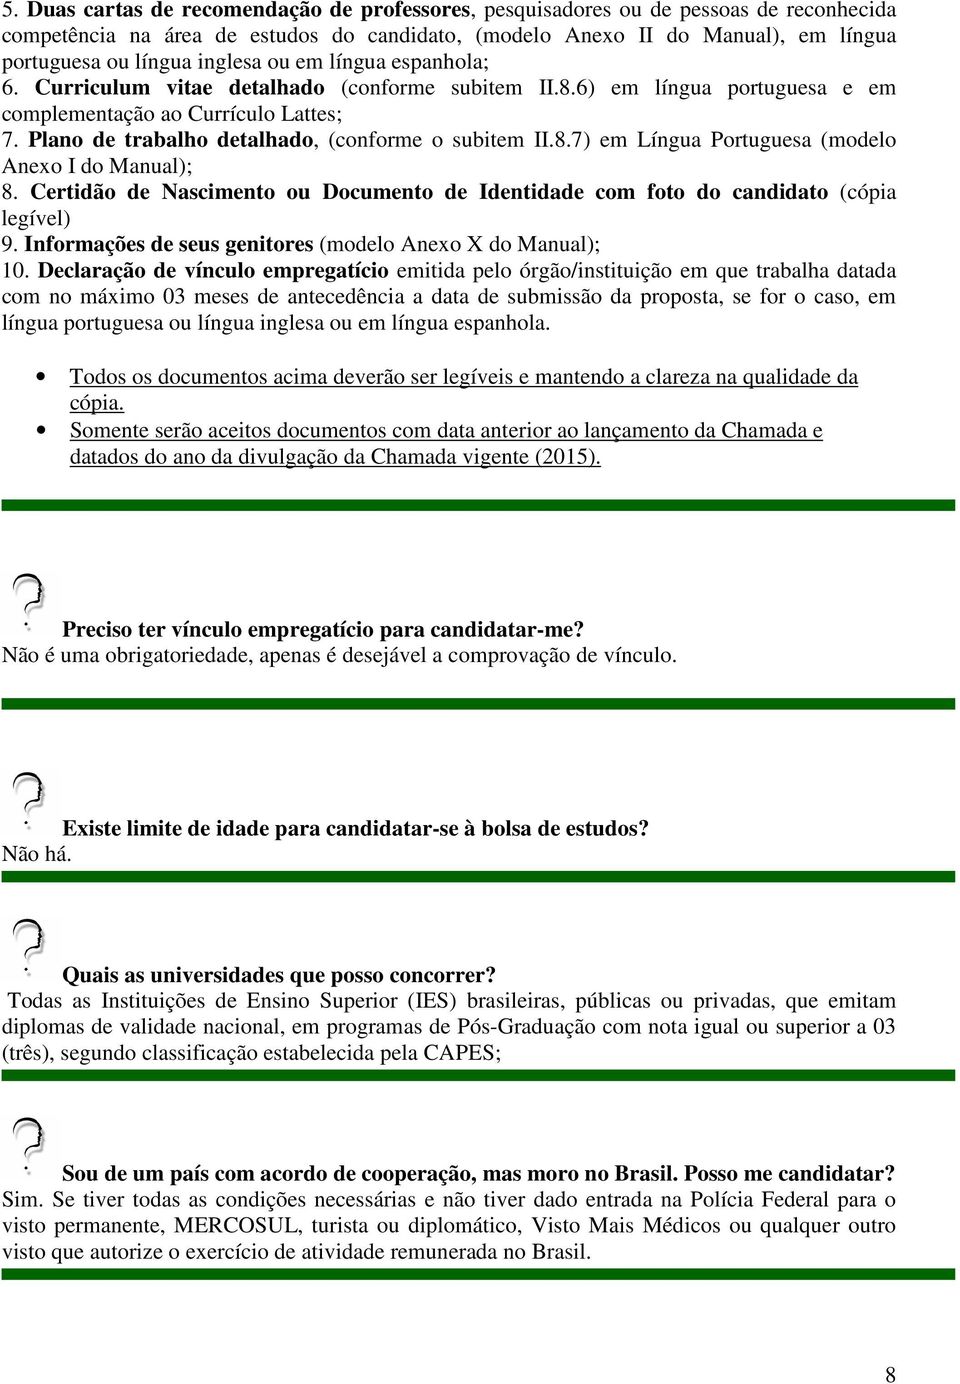 Plano de trabalho detalhado, (conforme o subitem II.8.7) em Língua Portuguesa (modelo Anexo I do Manual); 8. Certidão de Nascimento ou Documento de Identidade com foto do candidato (cópia legível) 9.